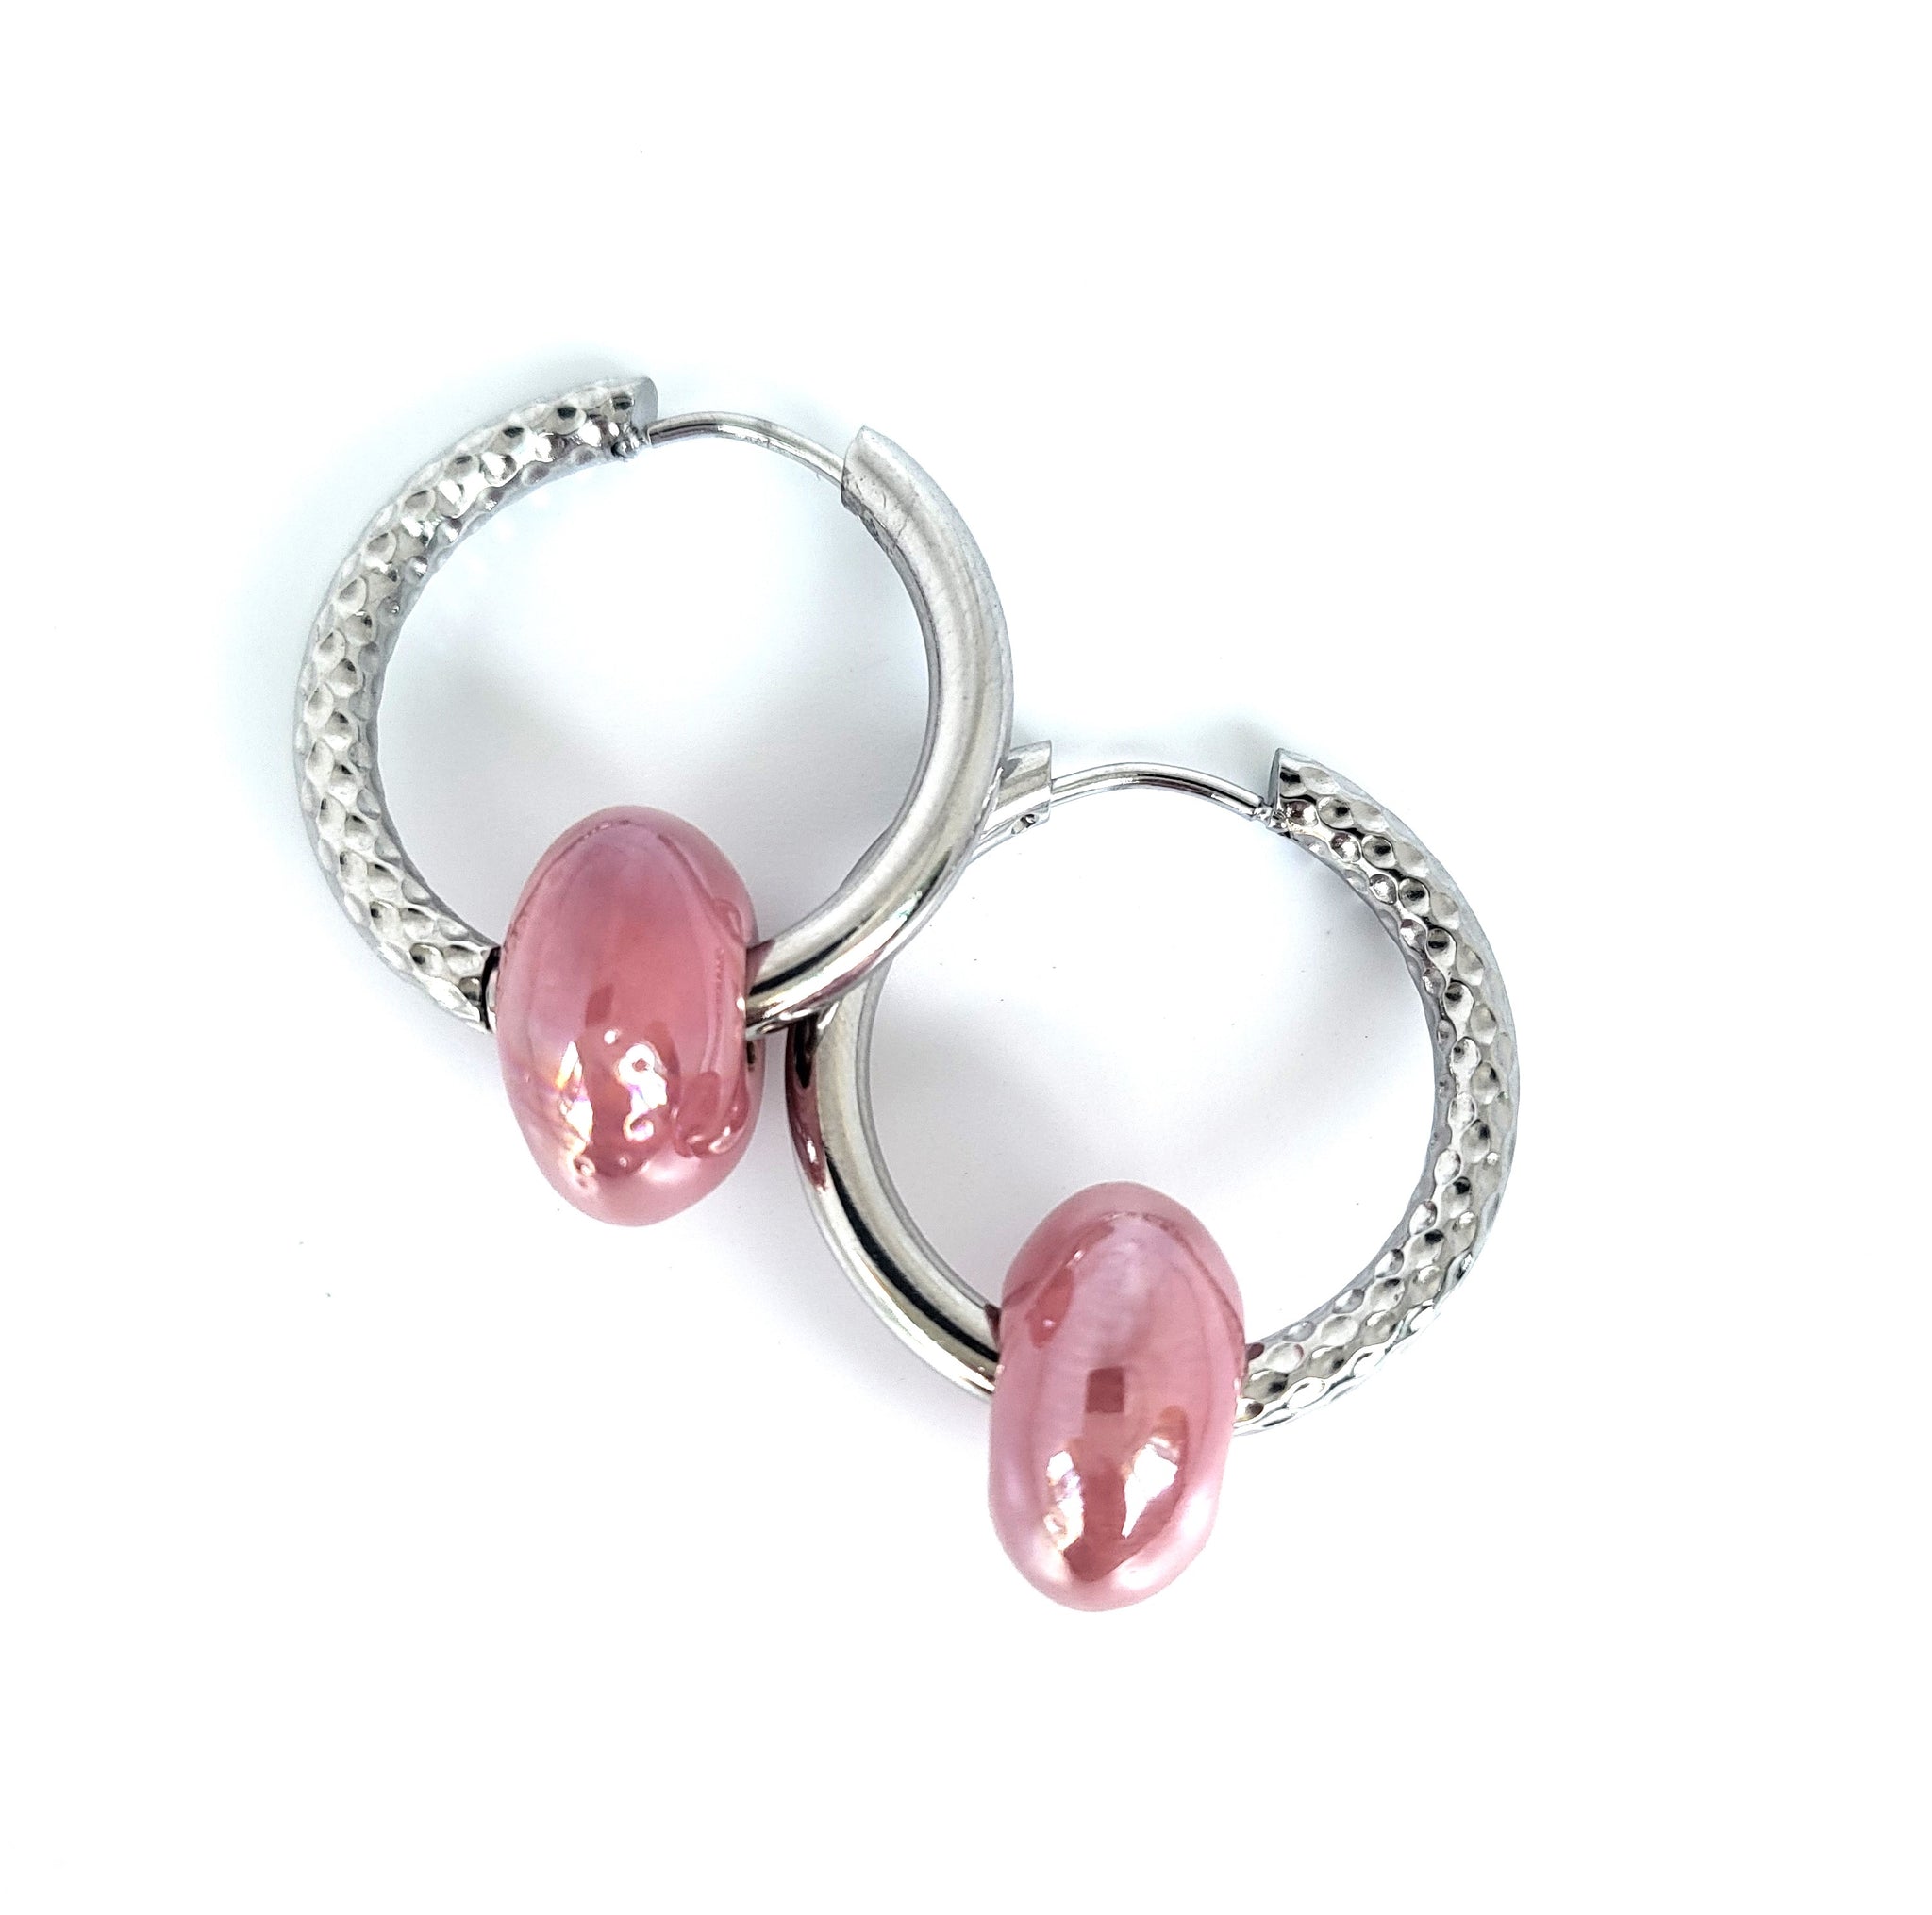 Earrings hoop with pink ceramic bead